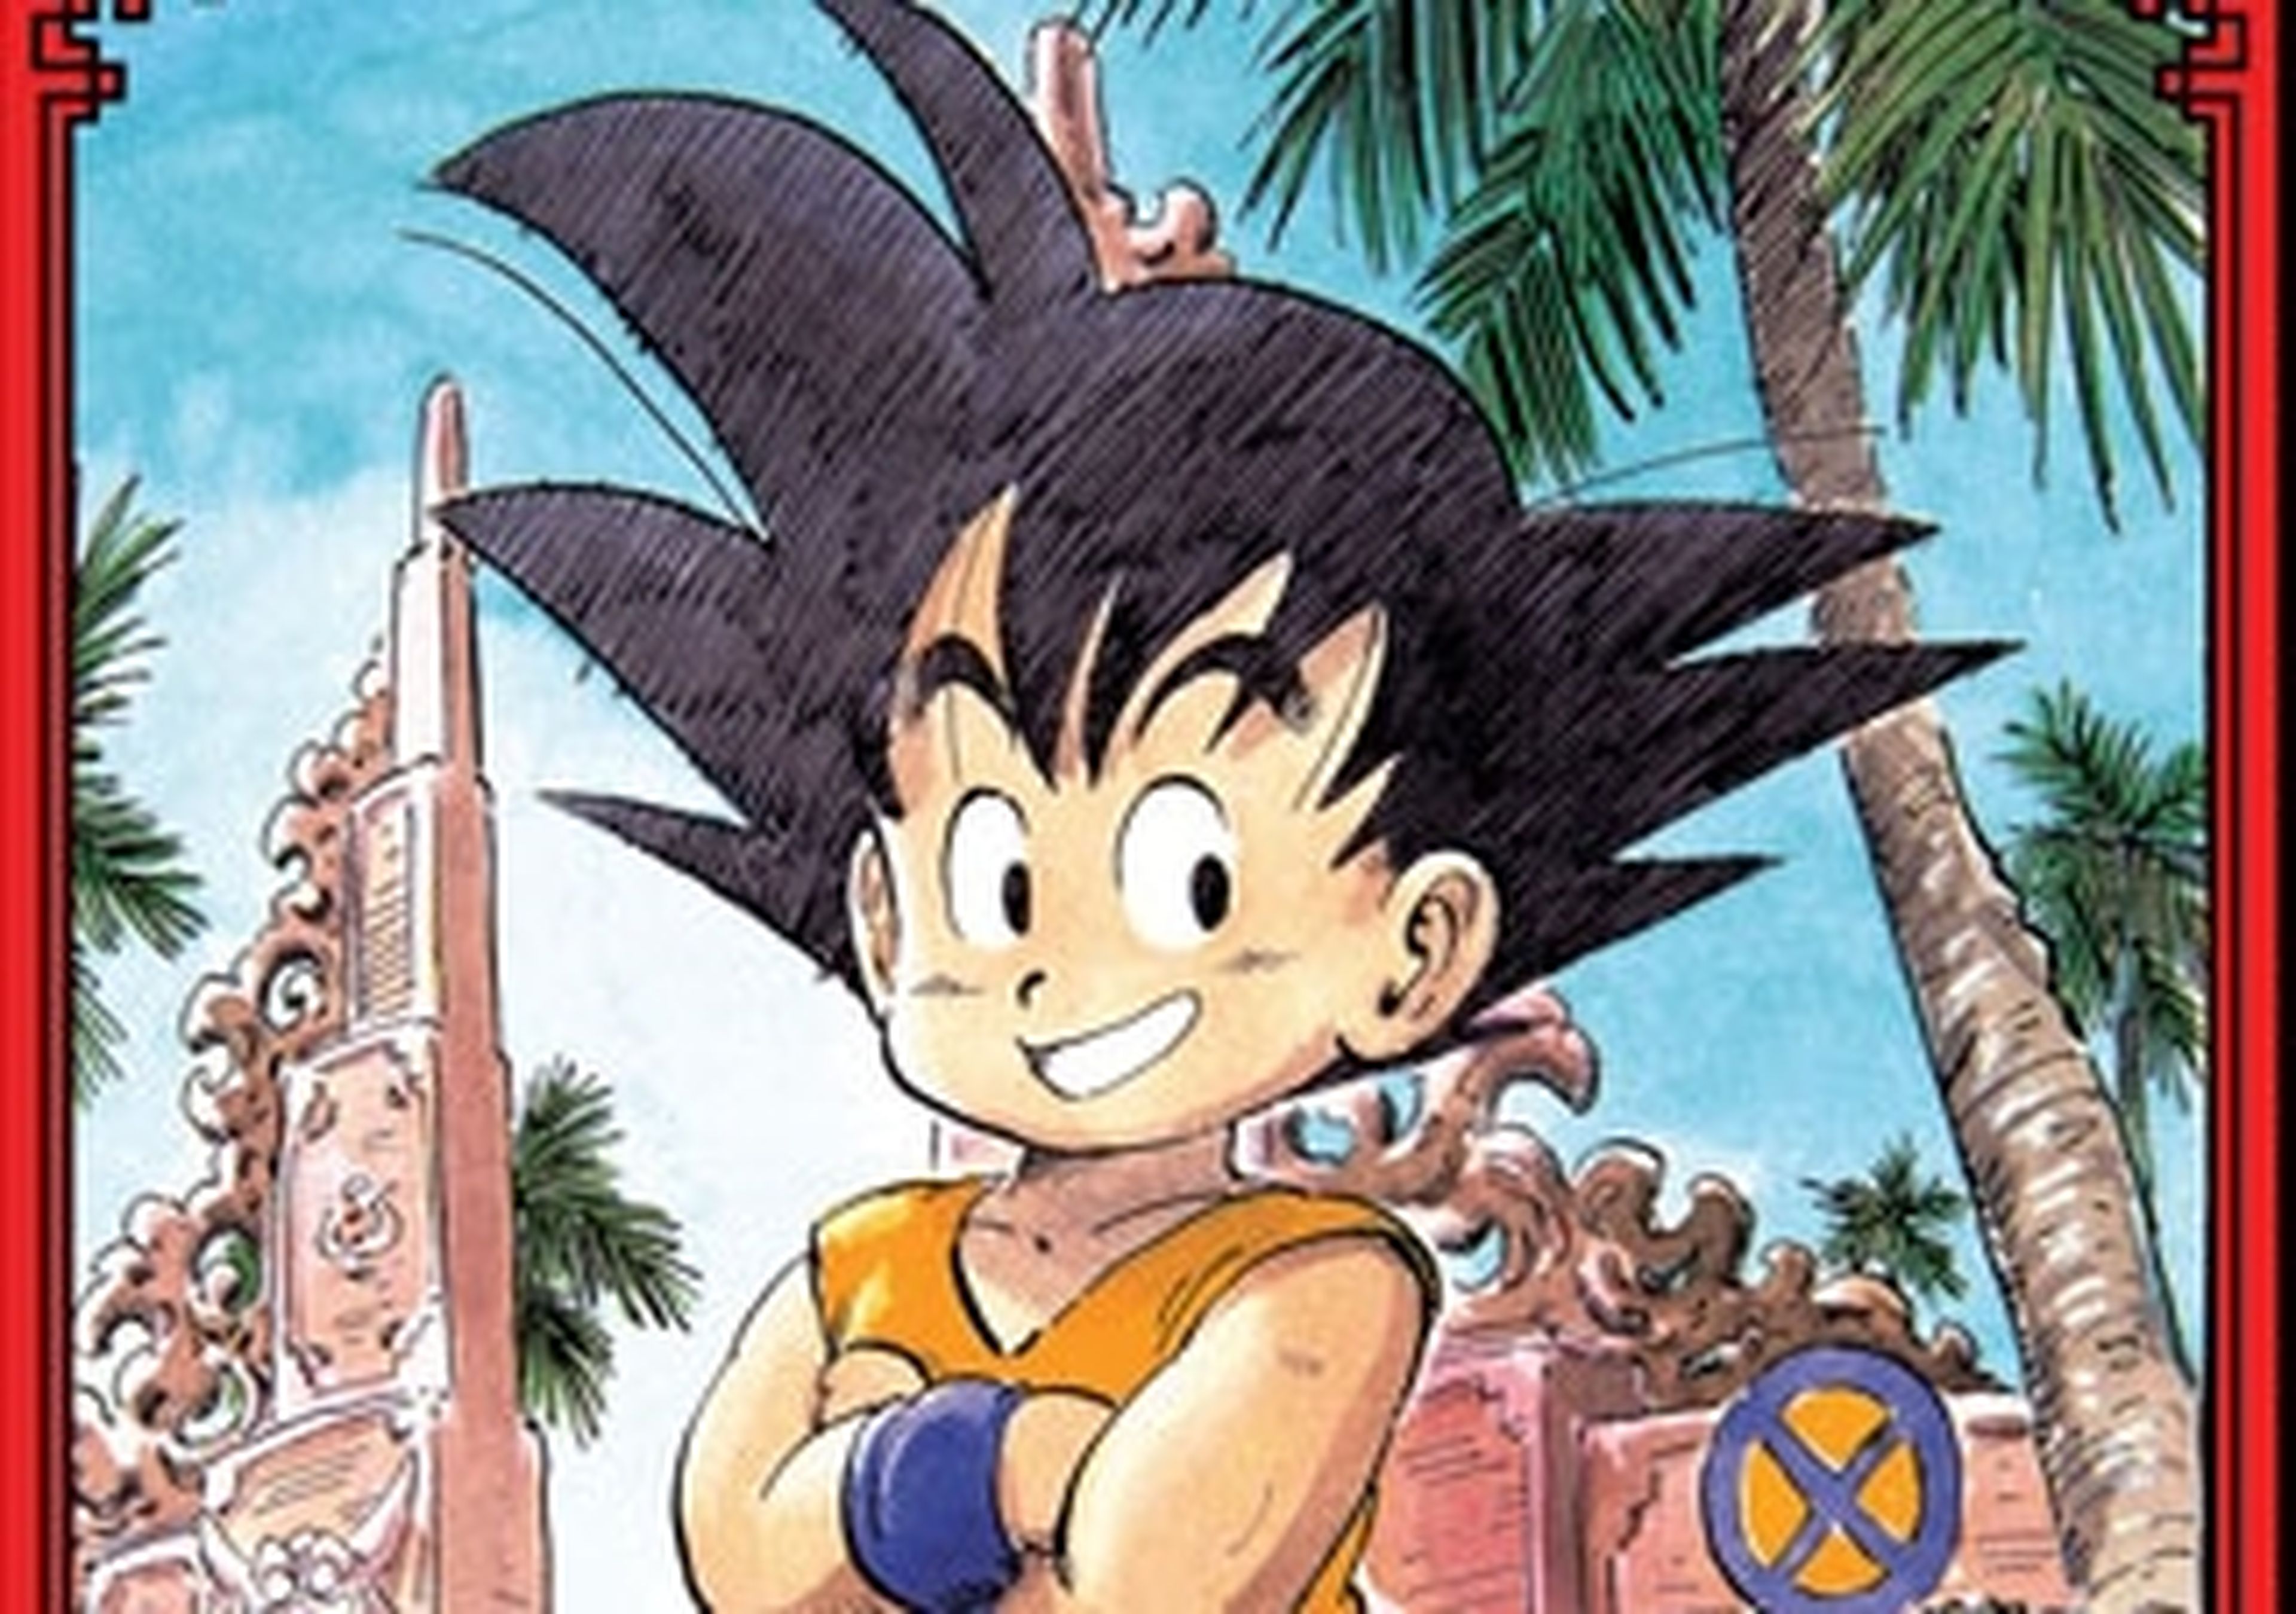 Los mejores mangas de Manga Plus - Dragon Ball